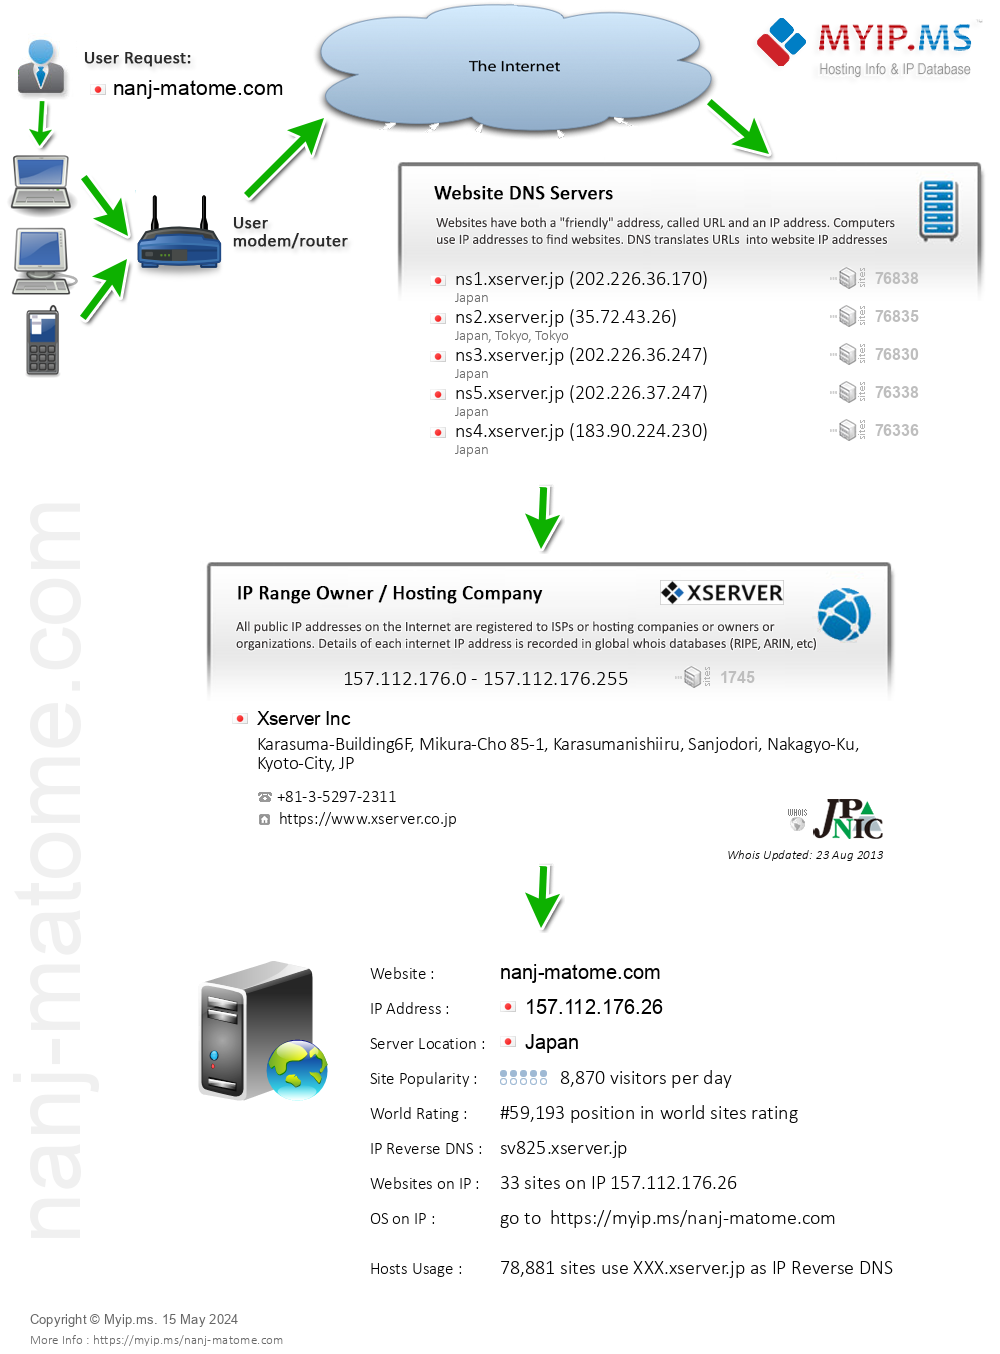 Nanj-matome.com - Website Hosting Visual IP Diagram